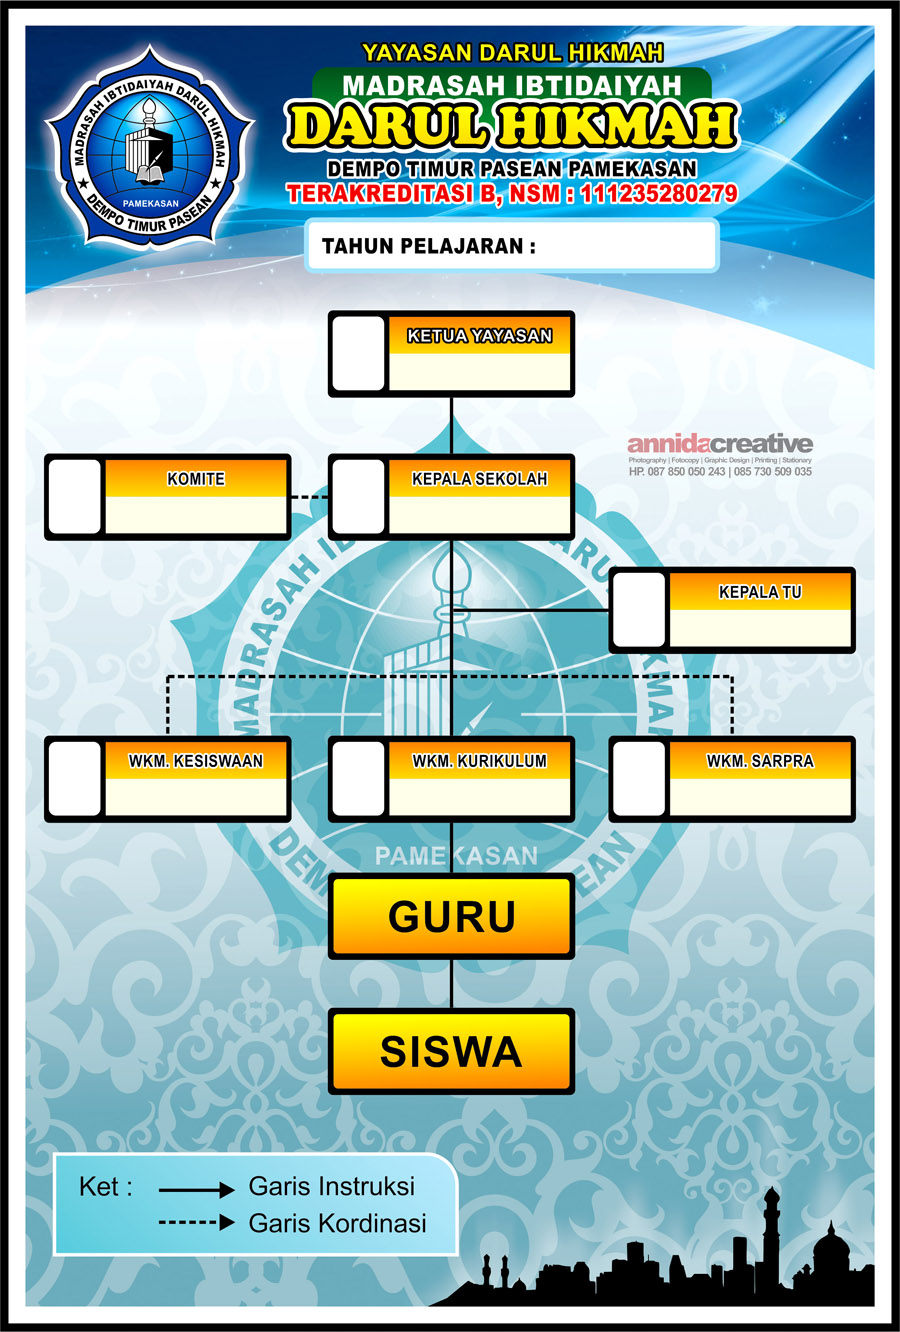 Struktur Organisasi Yayasan Darul Hikmah Pamekasan  Toko 